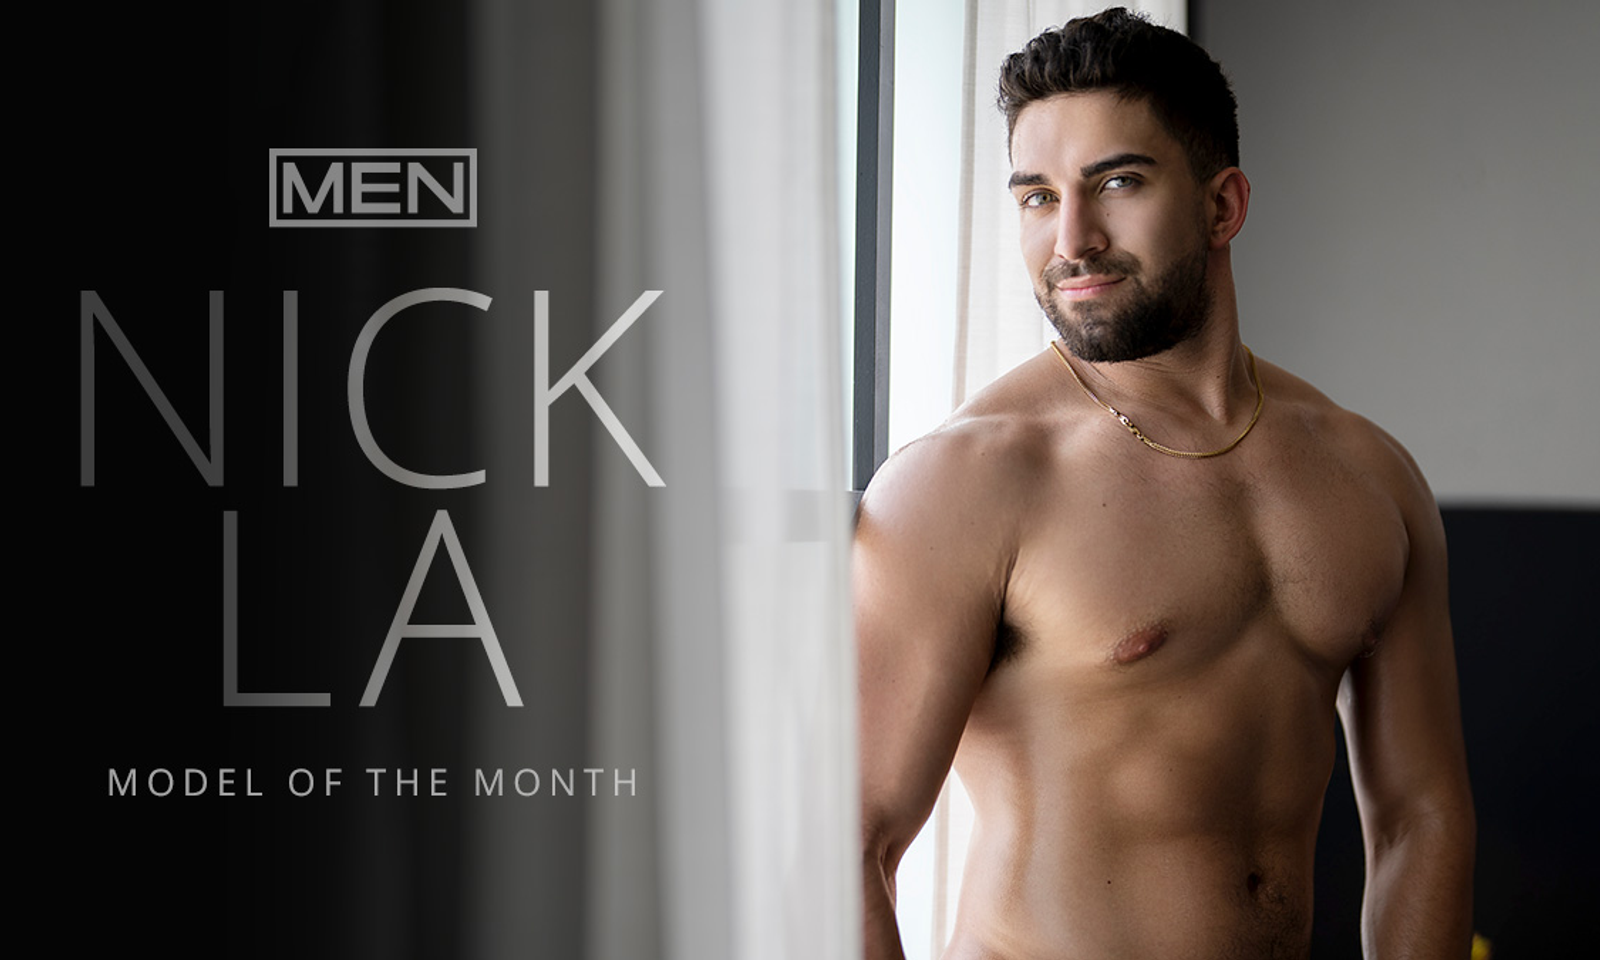 Men.com Names Nick LA Model of the Month